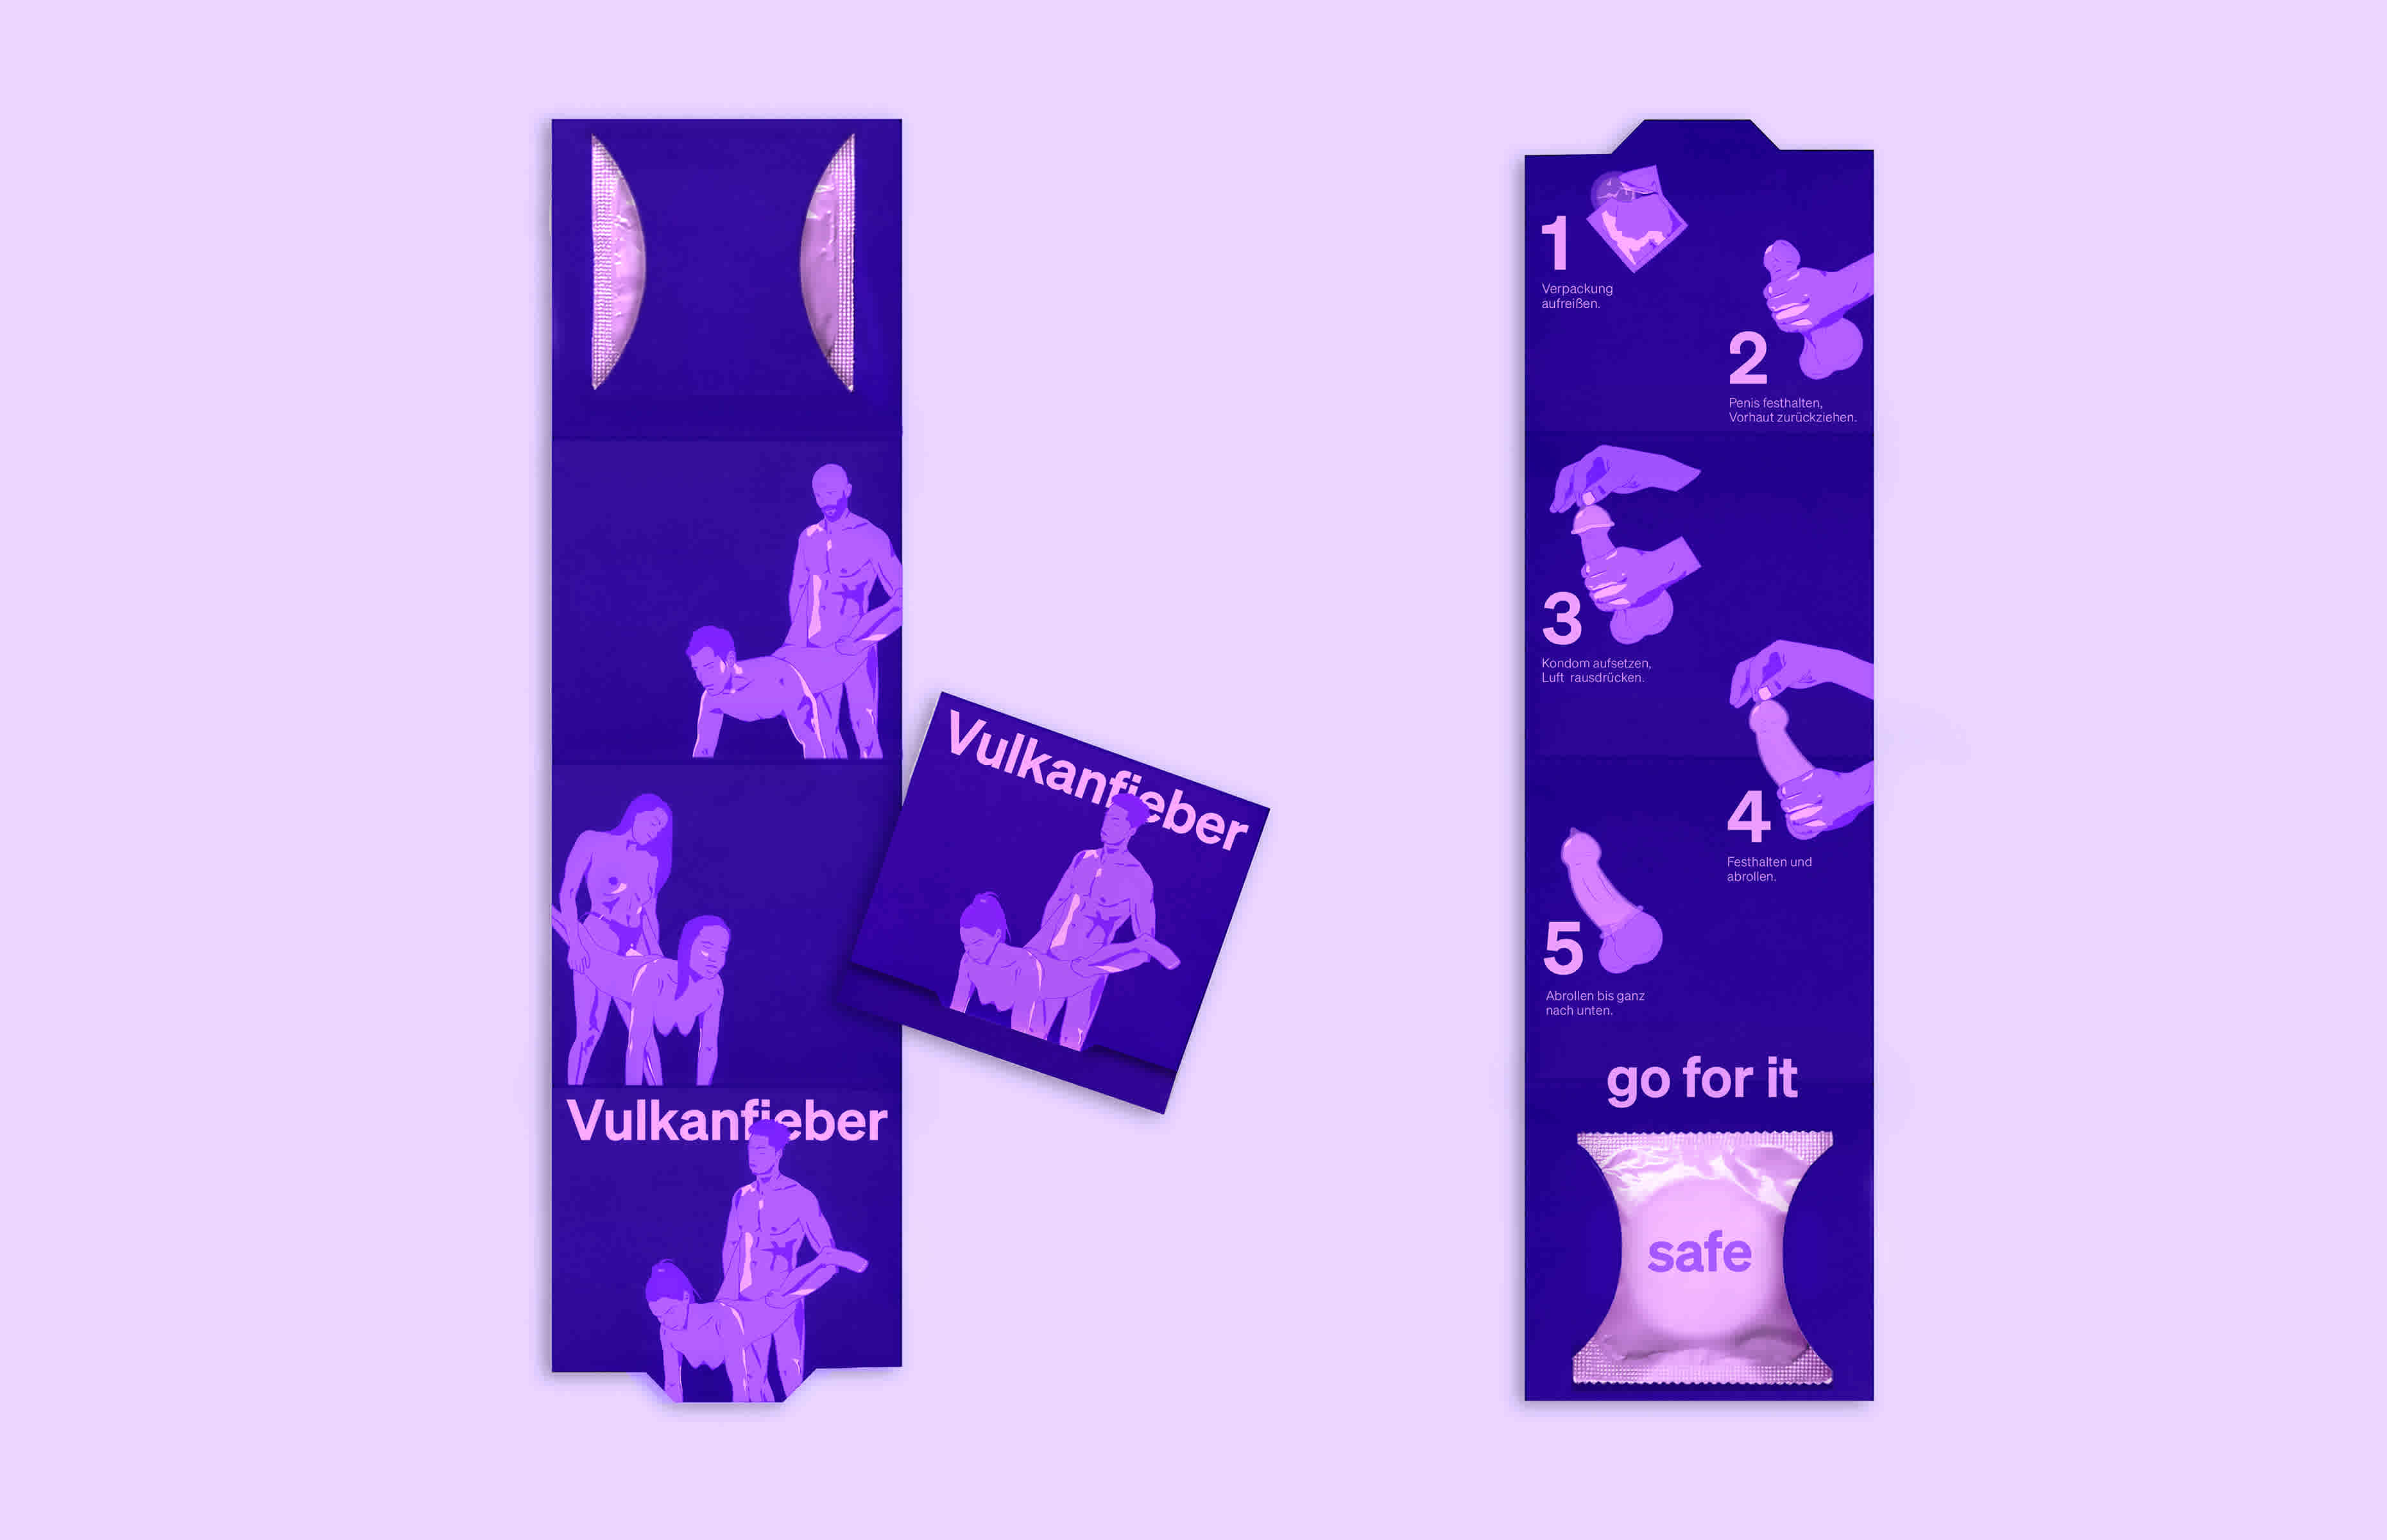 Das Design der Verpackung eines Kondoms ist auf der Vorder- und Rückseite zu sehen. Sie zeigt den Namen Vulkanfieber und verschiedene Sexstellungen in leuchtenden Farben.